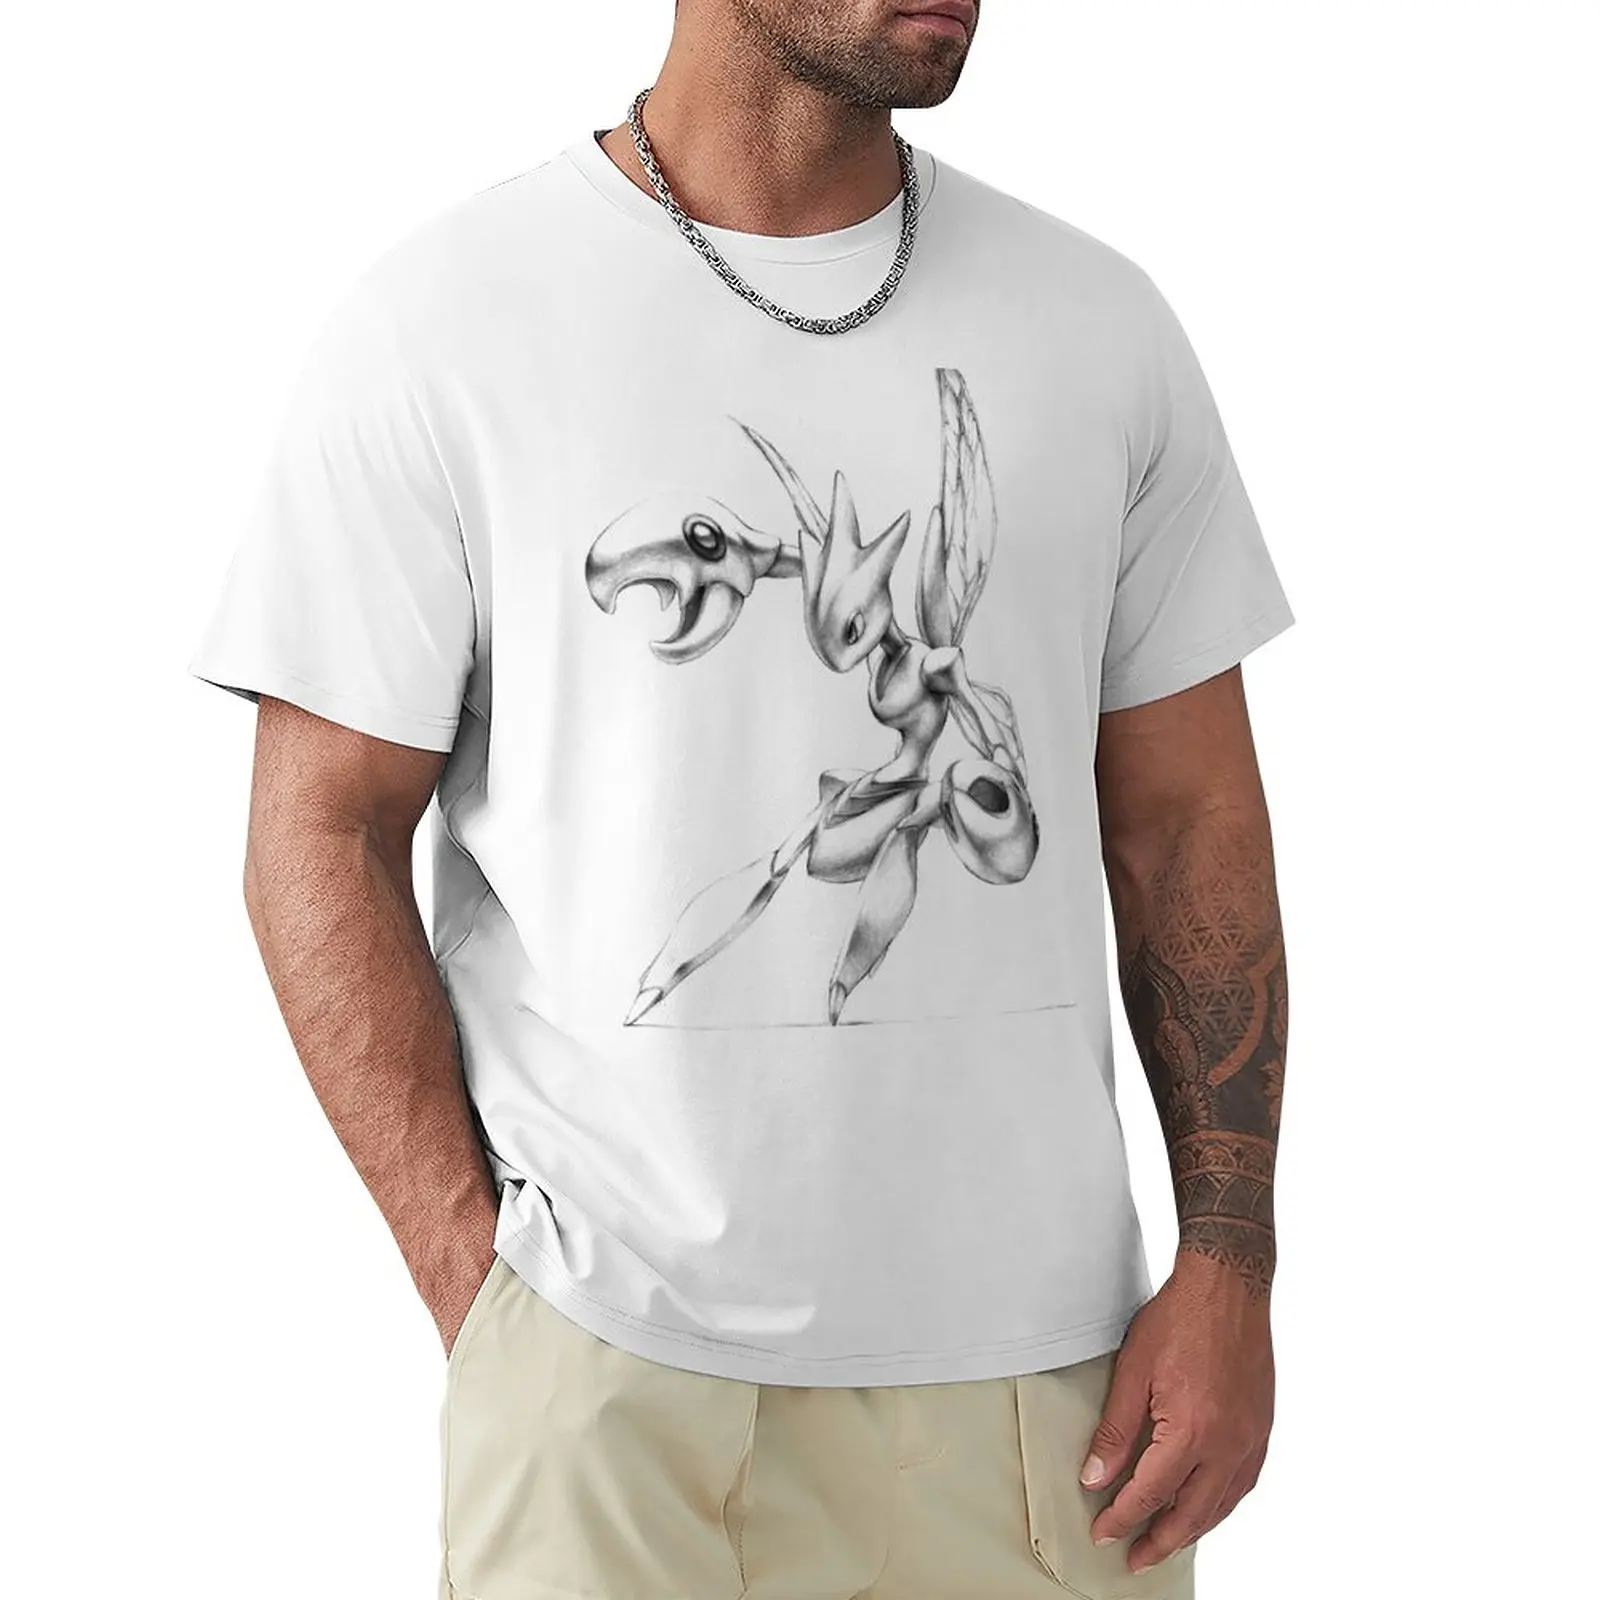 Scizor - футболка с оригинальной иллюстрацией, футболка для мальчика, мужская одежда, одежда для мужчин